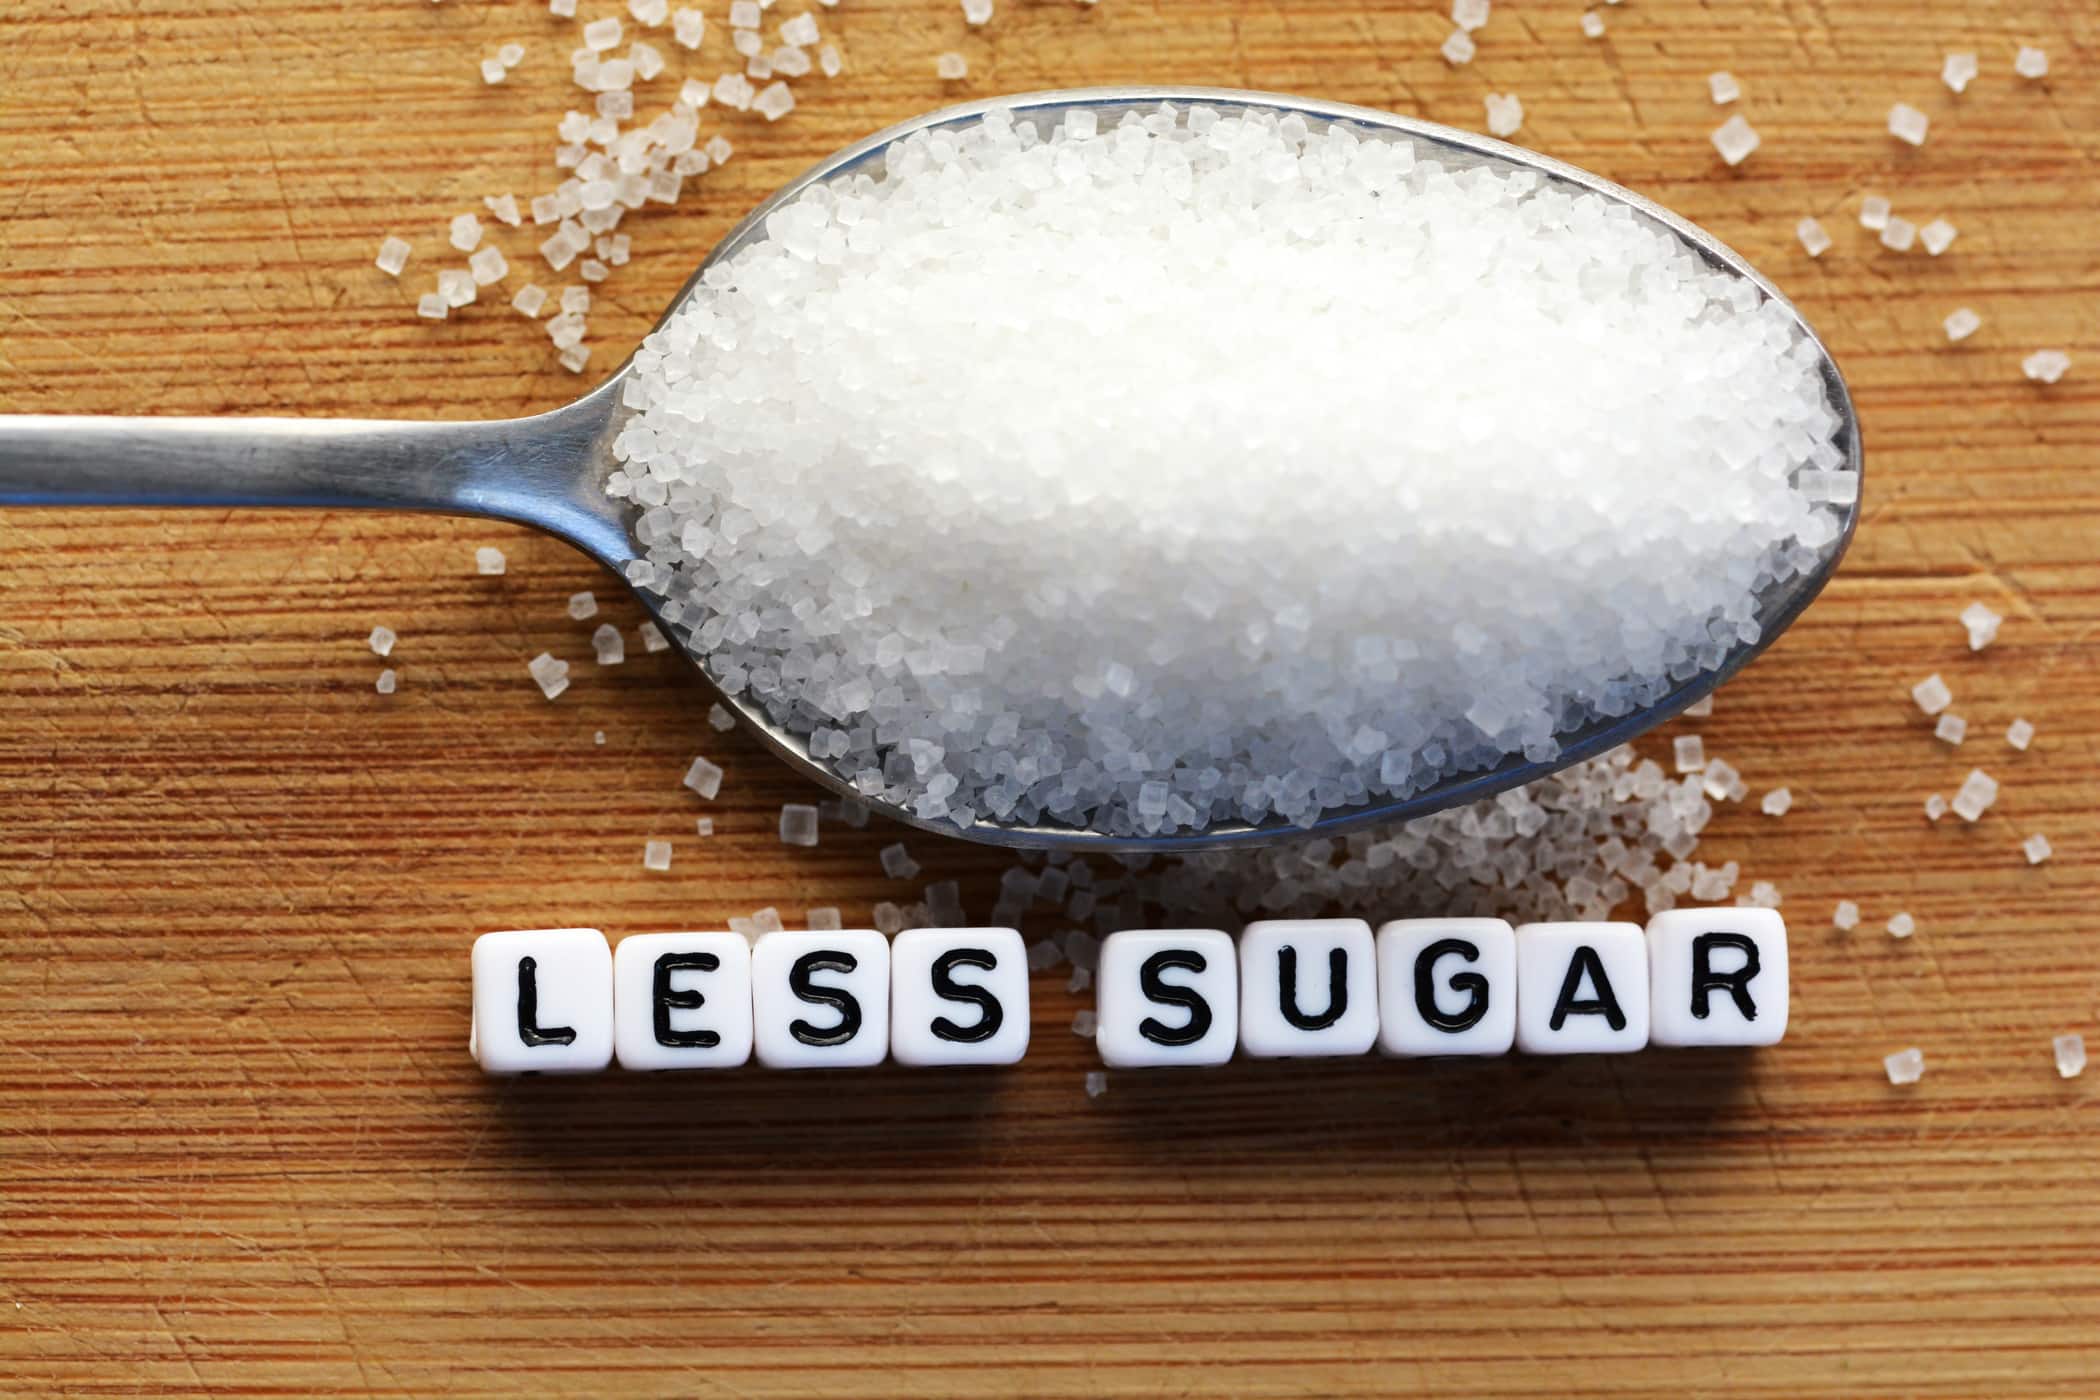 Berapakah Had Maksimum Penggunaan Gula Sehari?